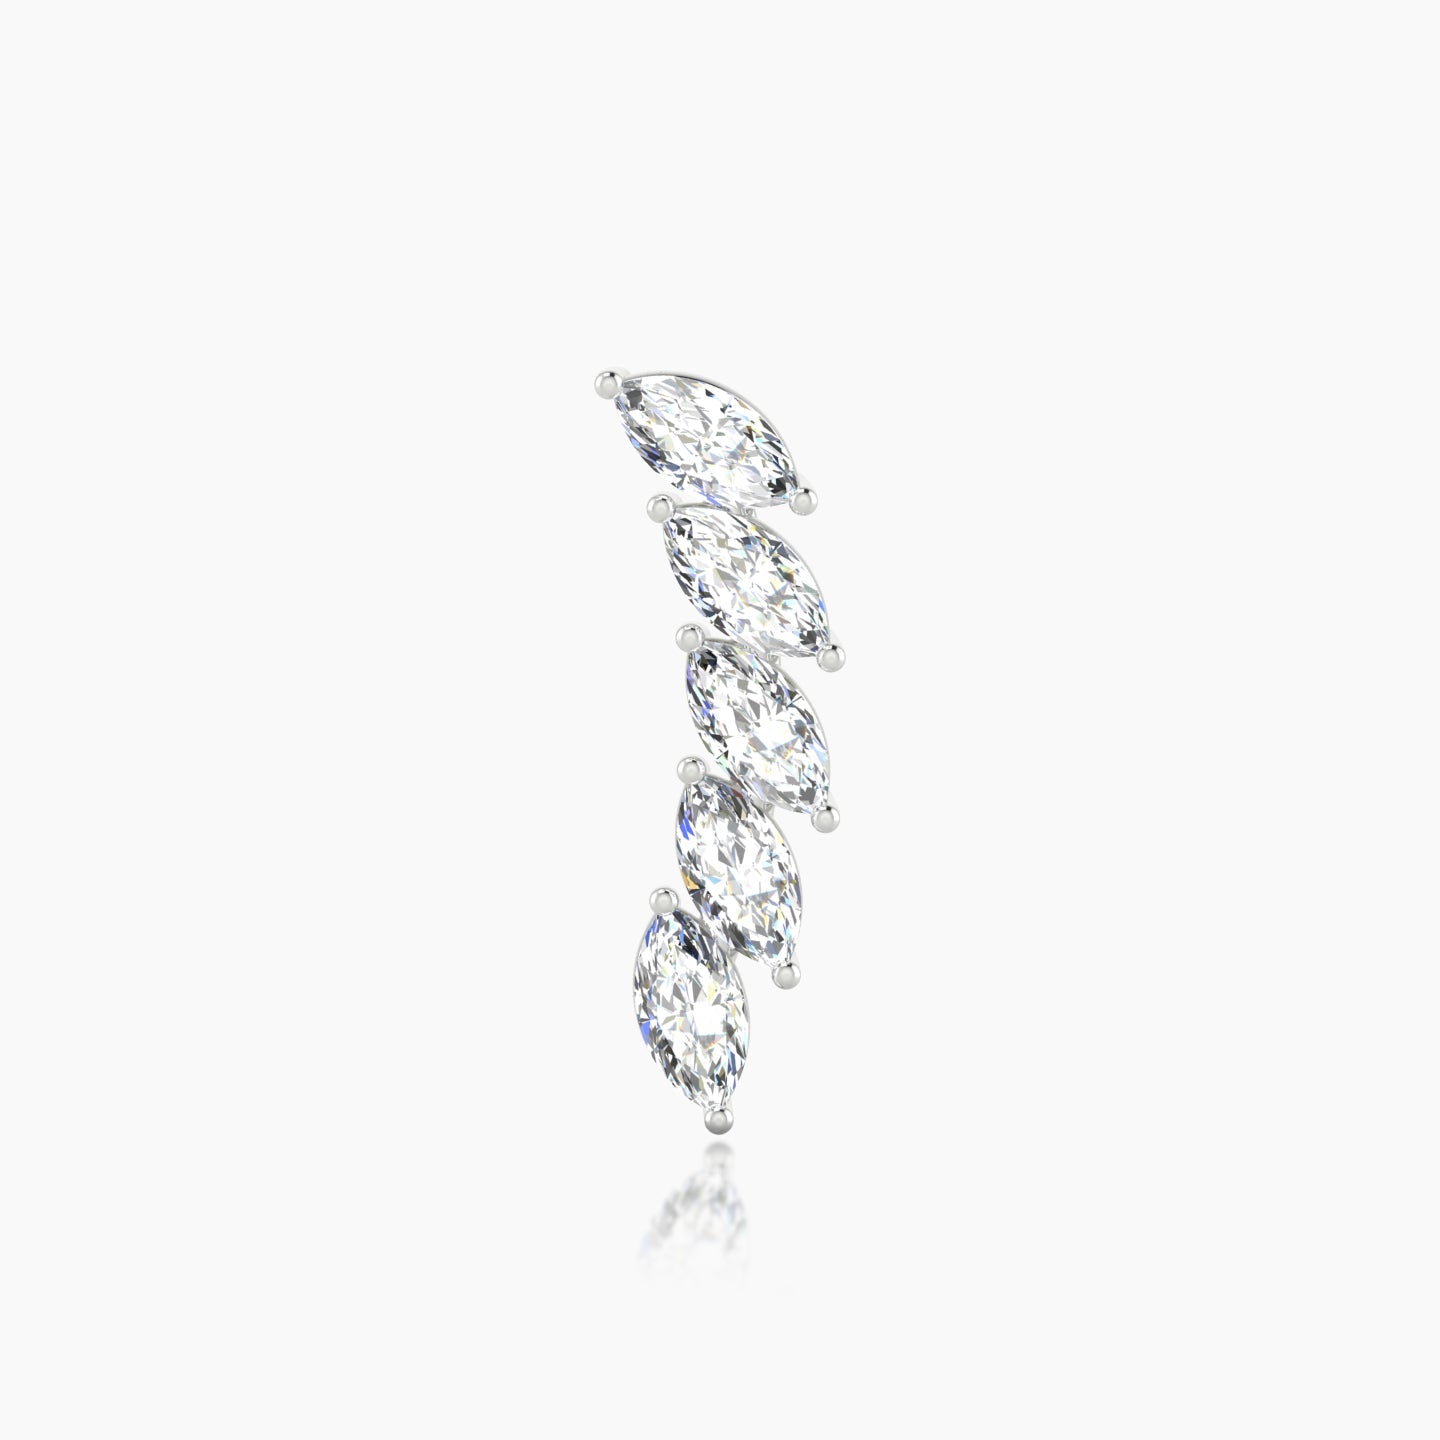 Celeste | 18k White Gold 14.5 mm Long Diamond Earring